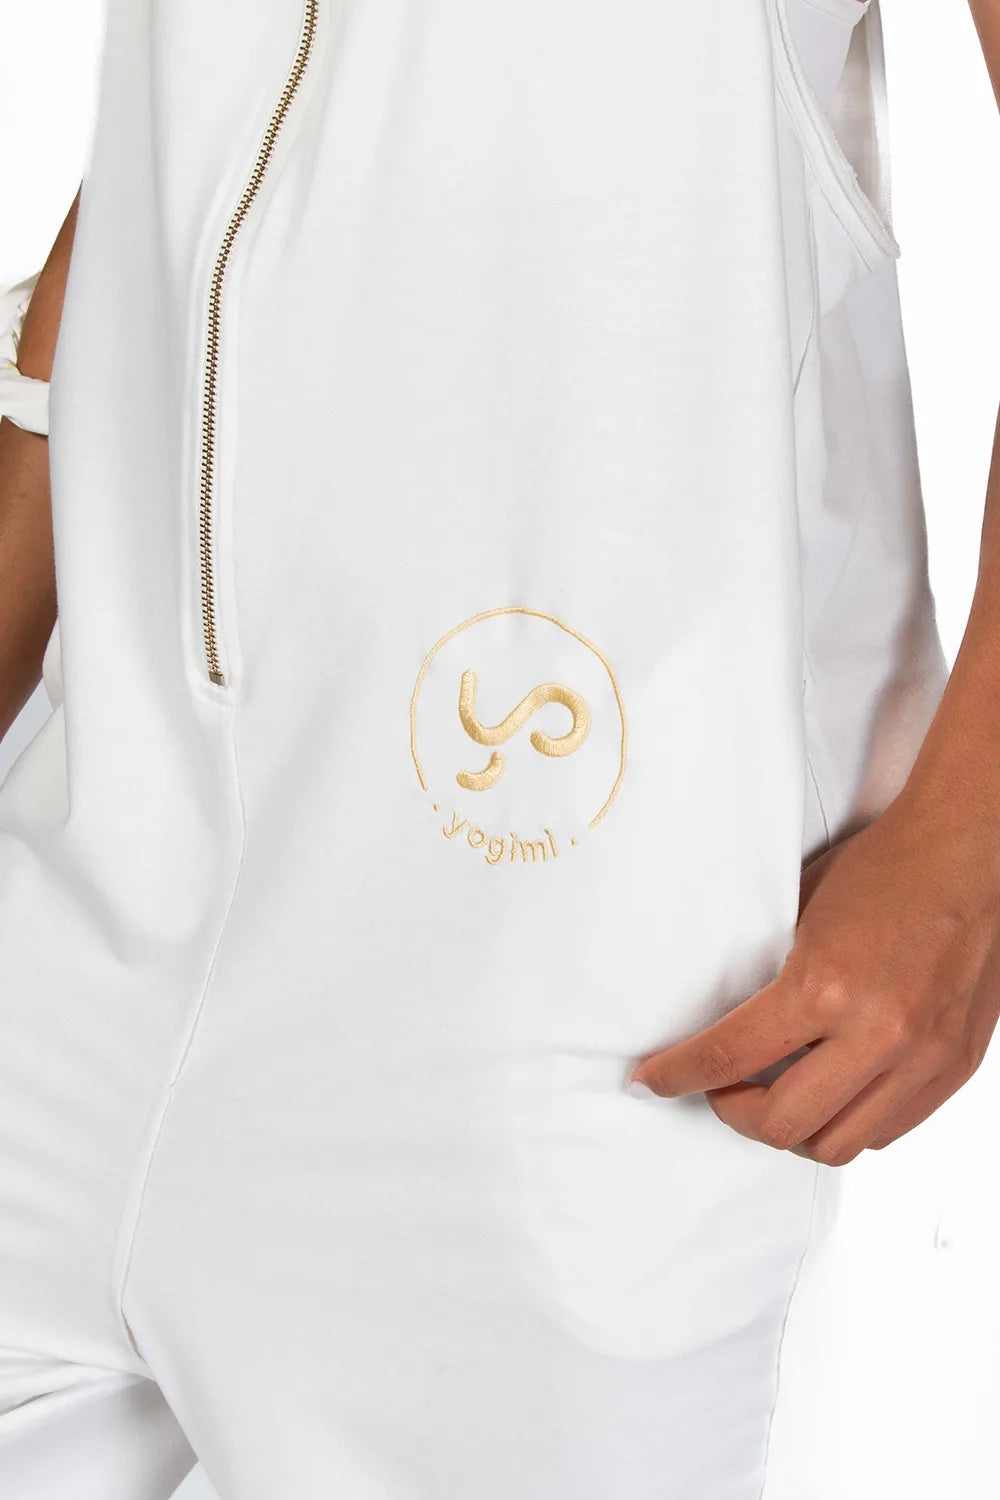 Detalle logo bordado delantero de Peto Freedom oversize en color blanco de Yogimi. Peto Freedom Coconut Milk de Yogimi